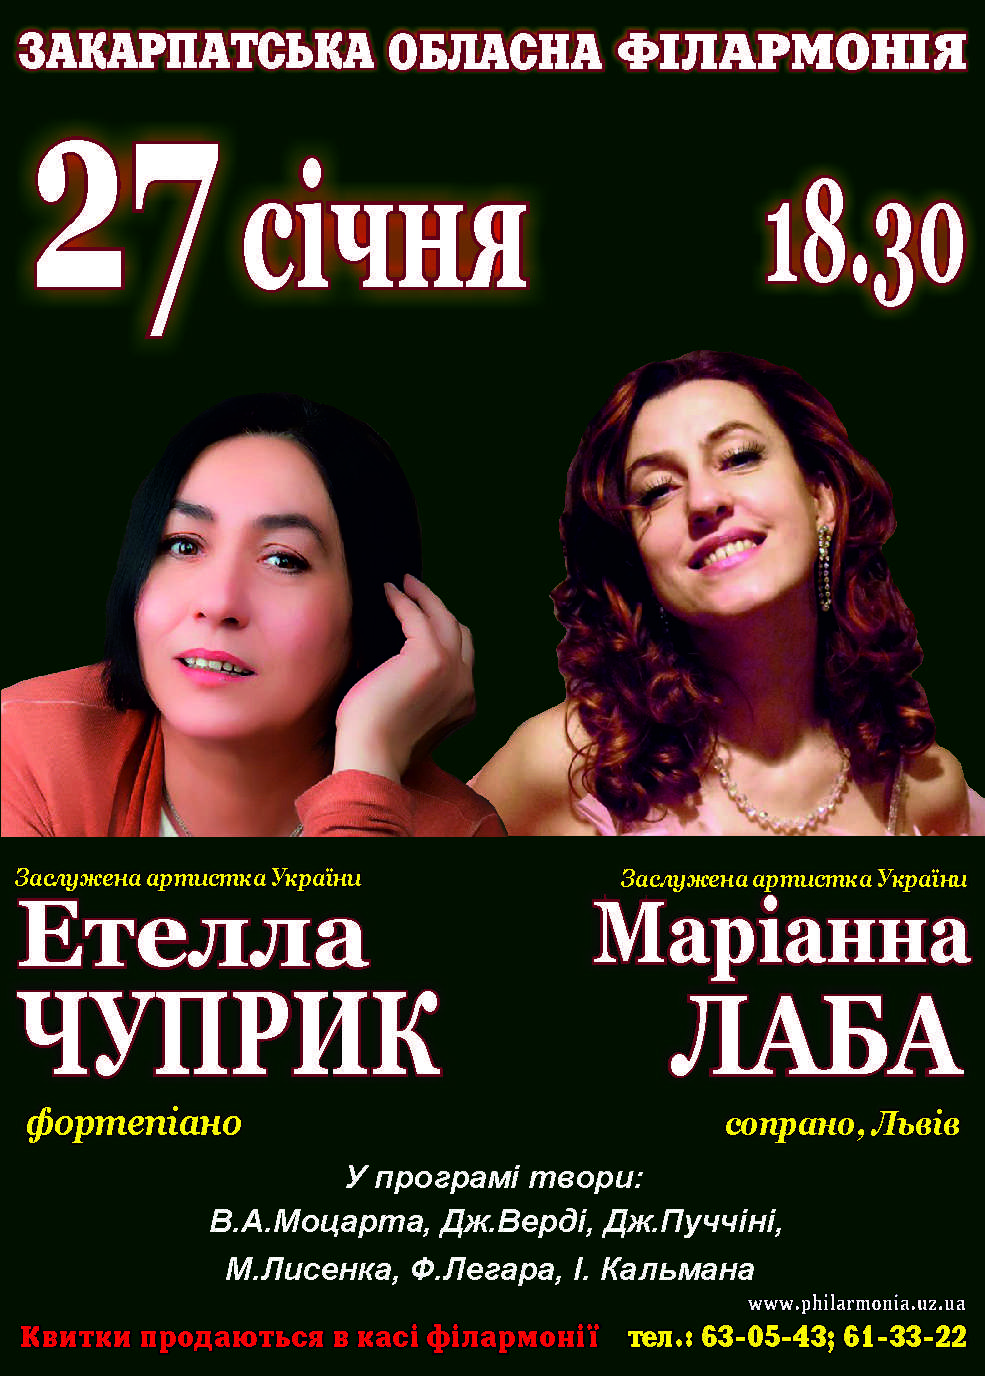 В обласній філармонії в Ужгороді тандемно виступлять "львівські закарпатки" Етелла Чуприк та Маріанна Лаба